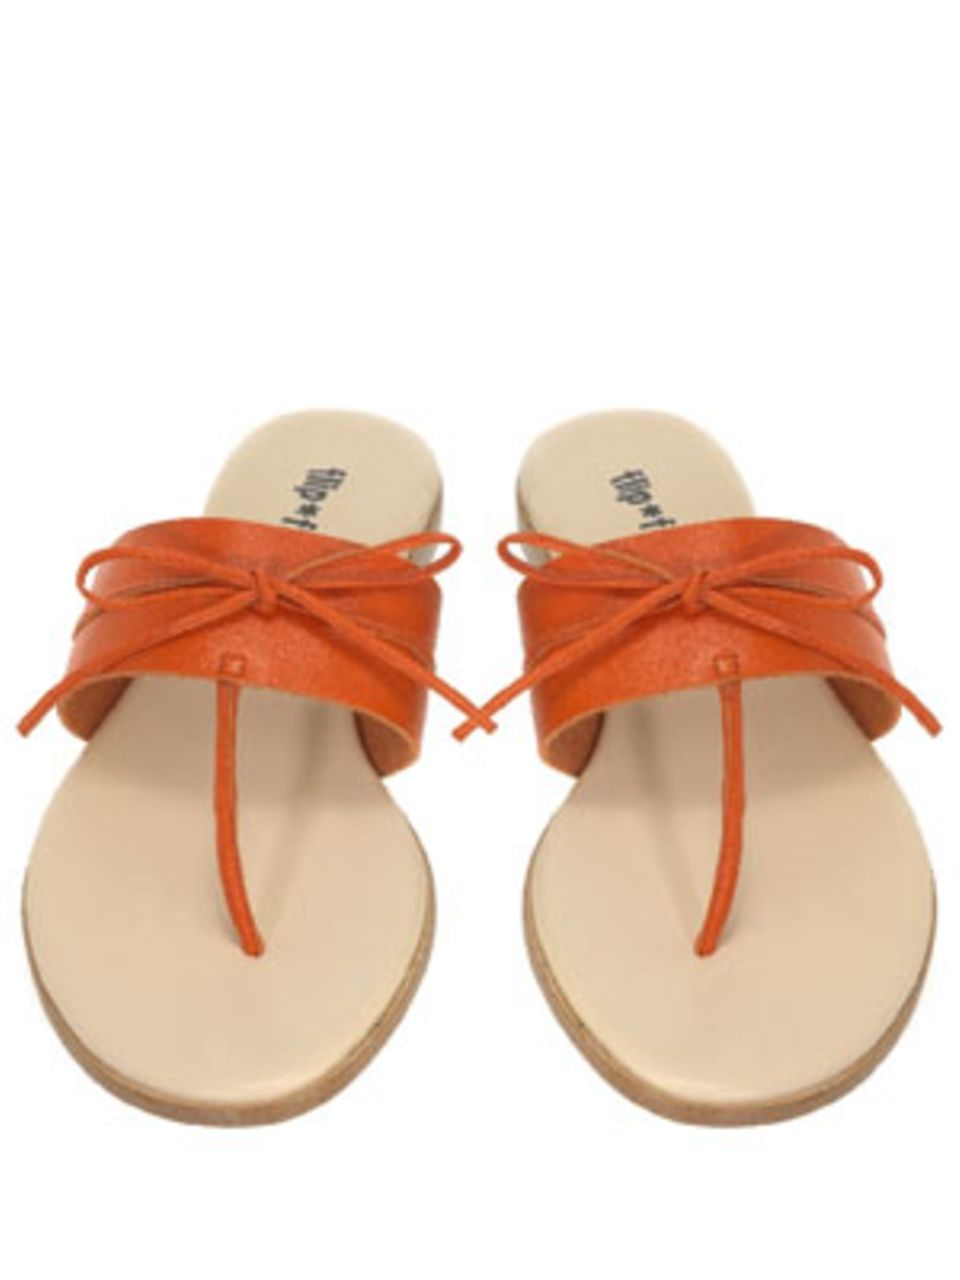 Orangefarbene Sandalen mit Schleife von flip flop, um 100 Euro.